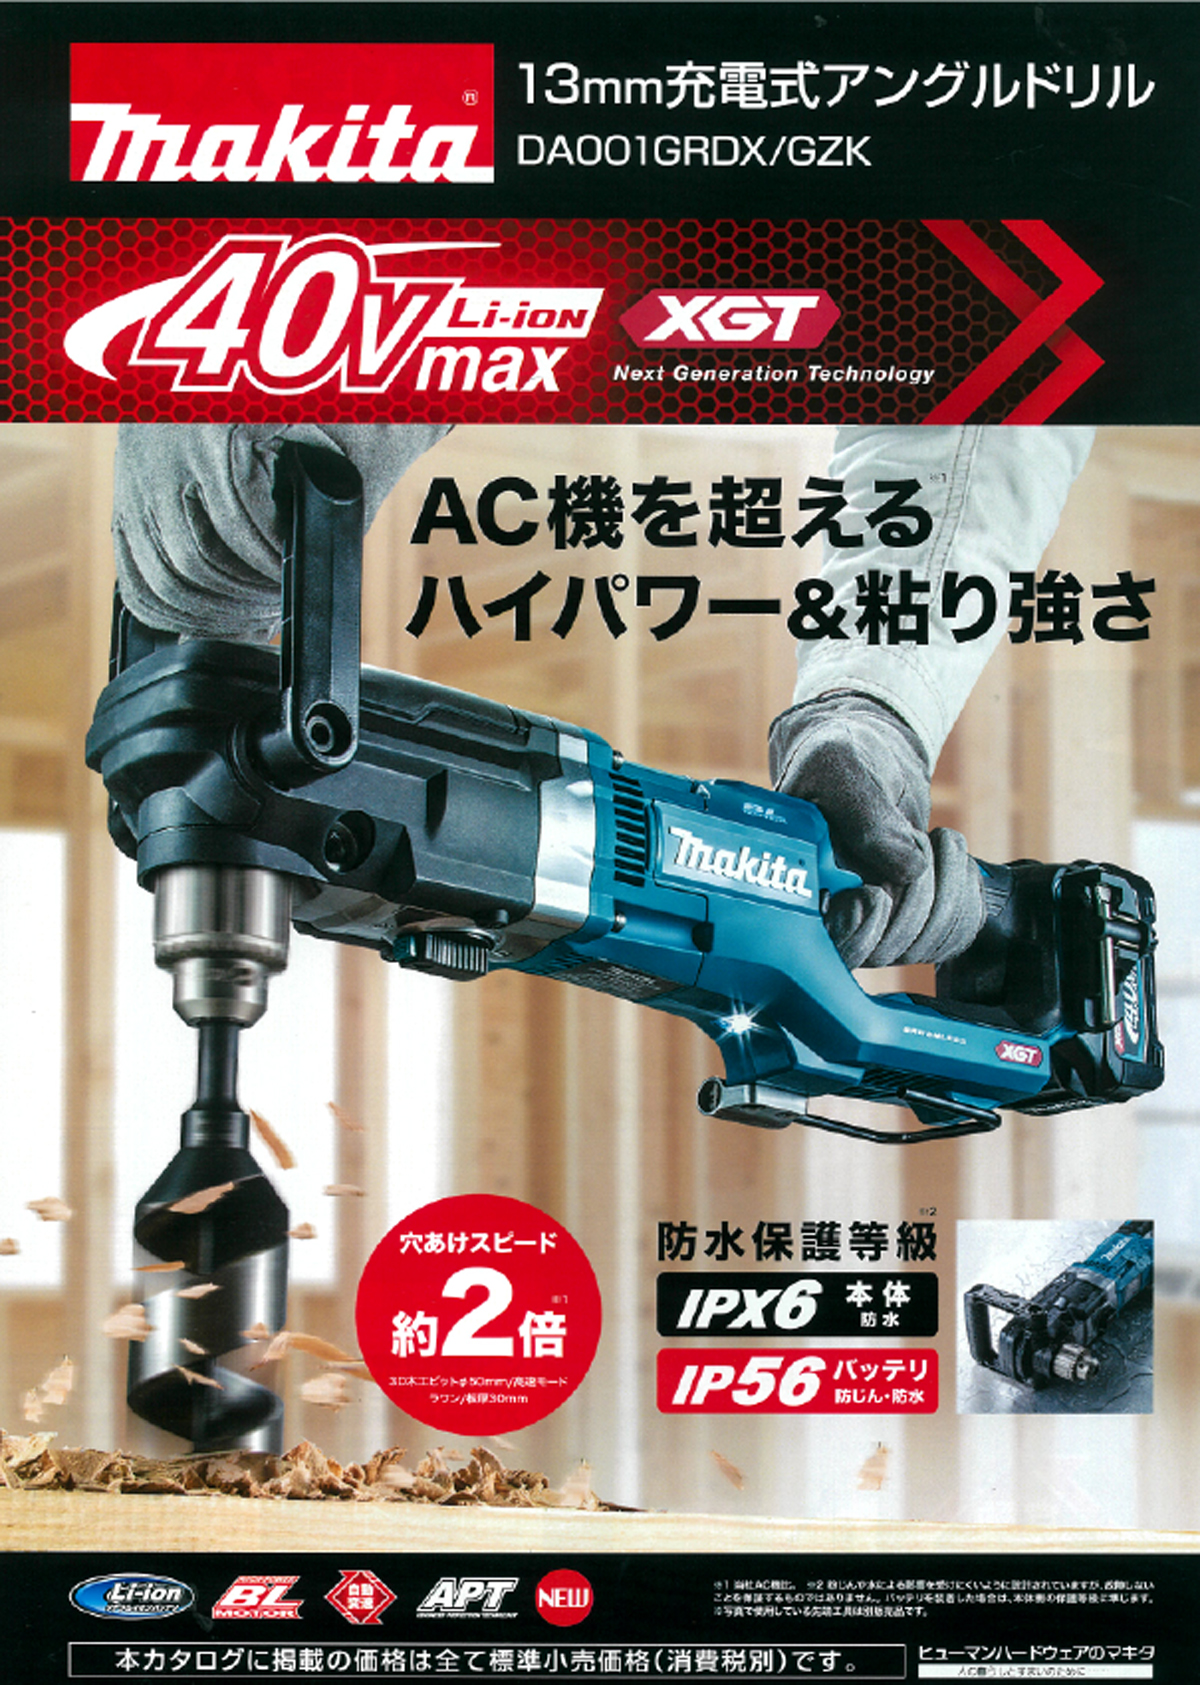 マキタ DA001GRDX 40Vmax 13mm充電式アングルドリル ウエダ金物【公式サイト】